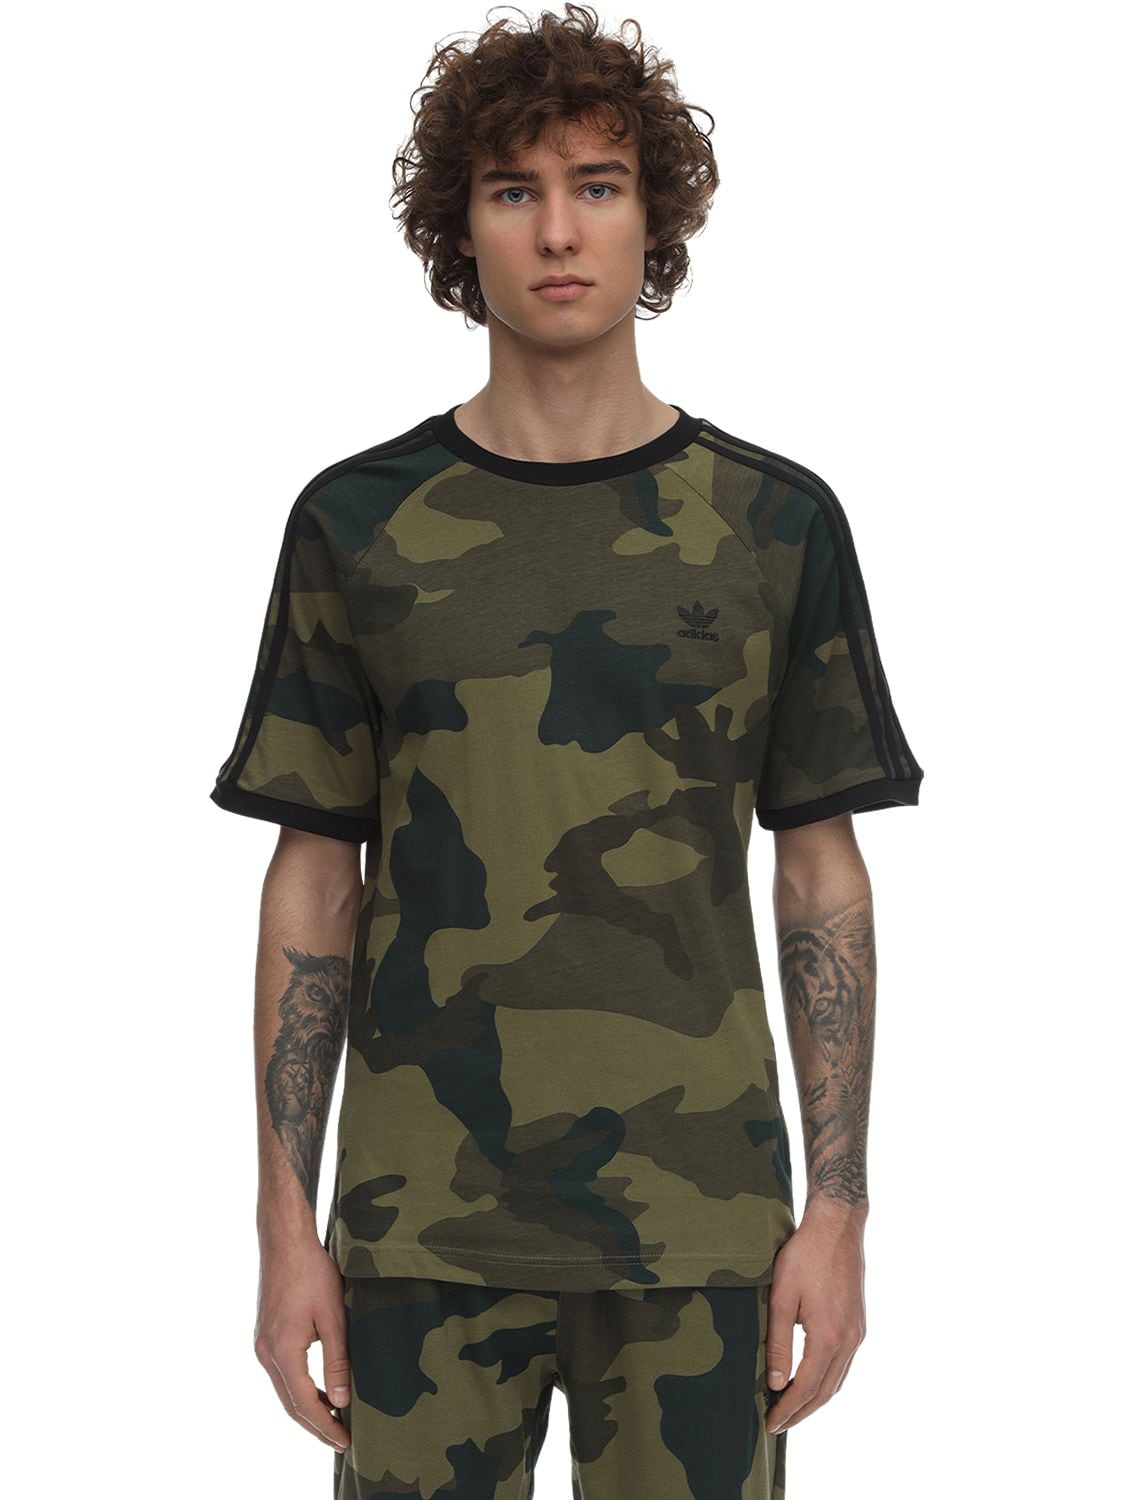 adidas army t shirt